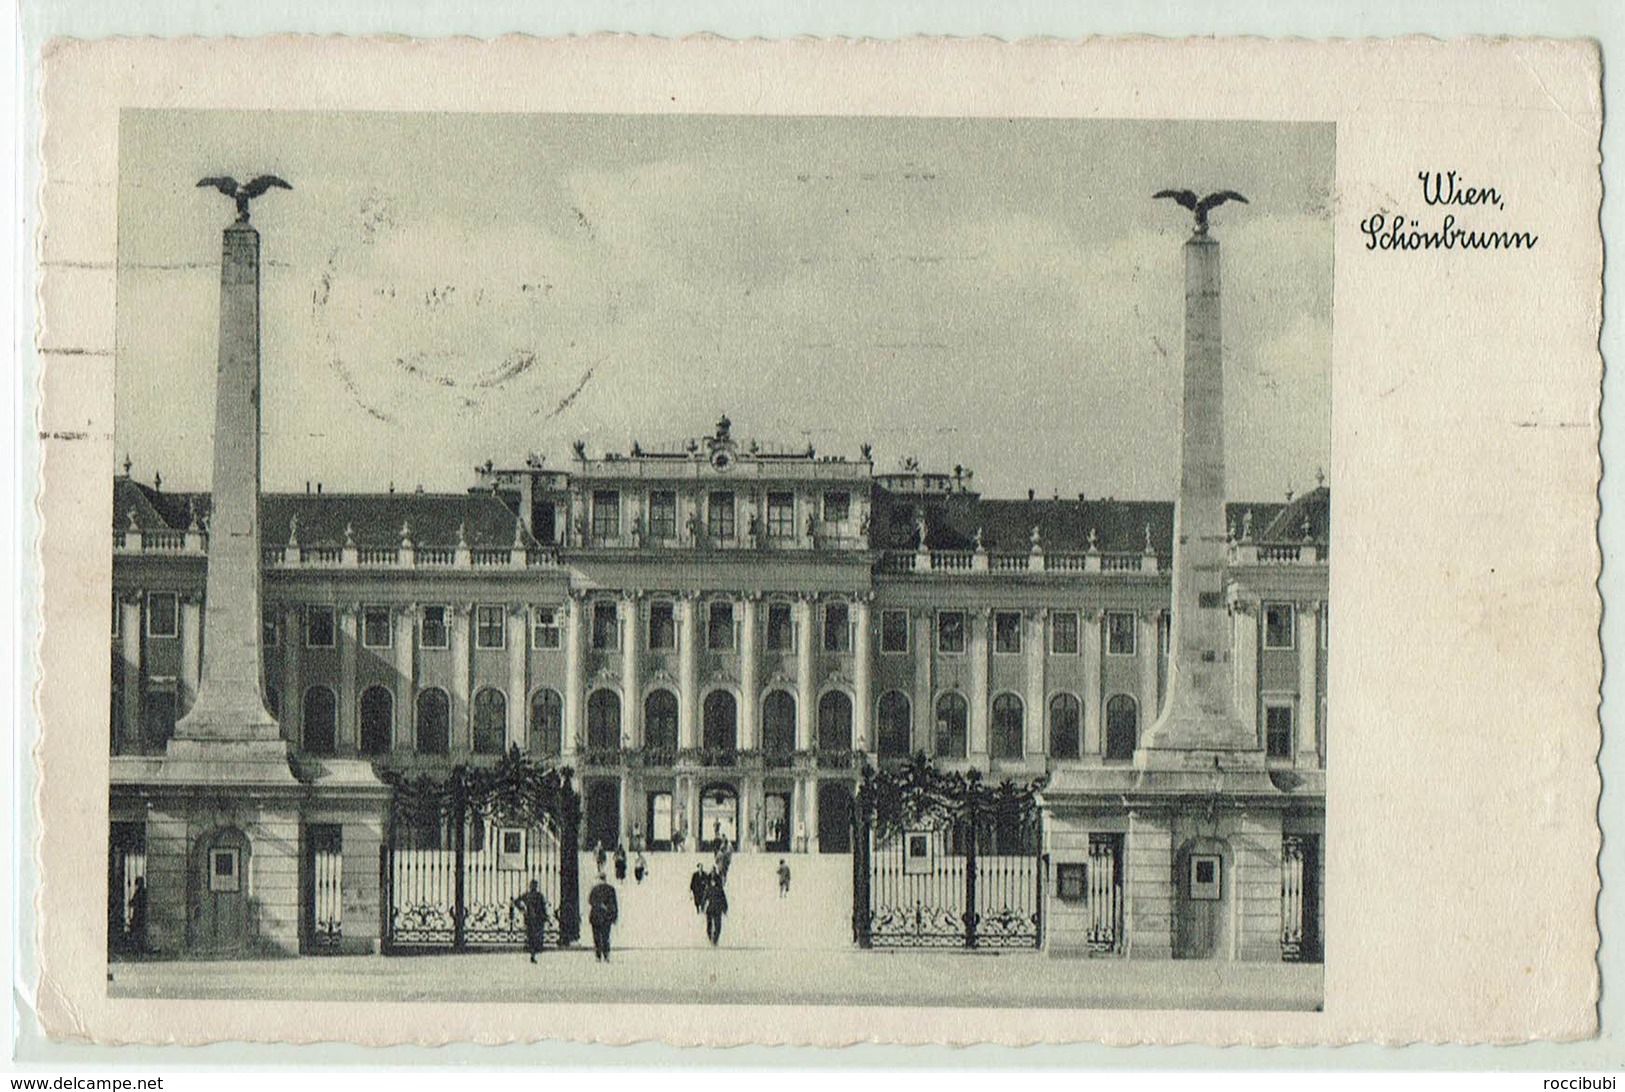 Wien, Schönbrunn - Schönbrunn Palace